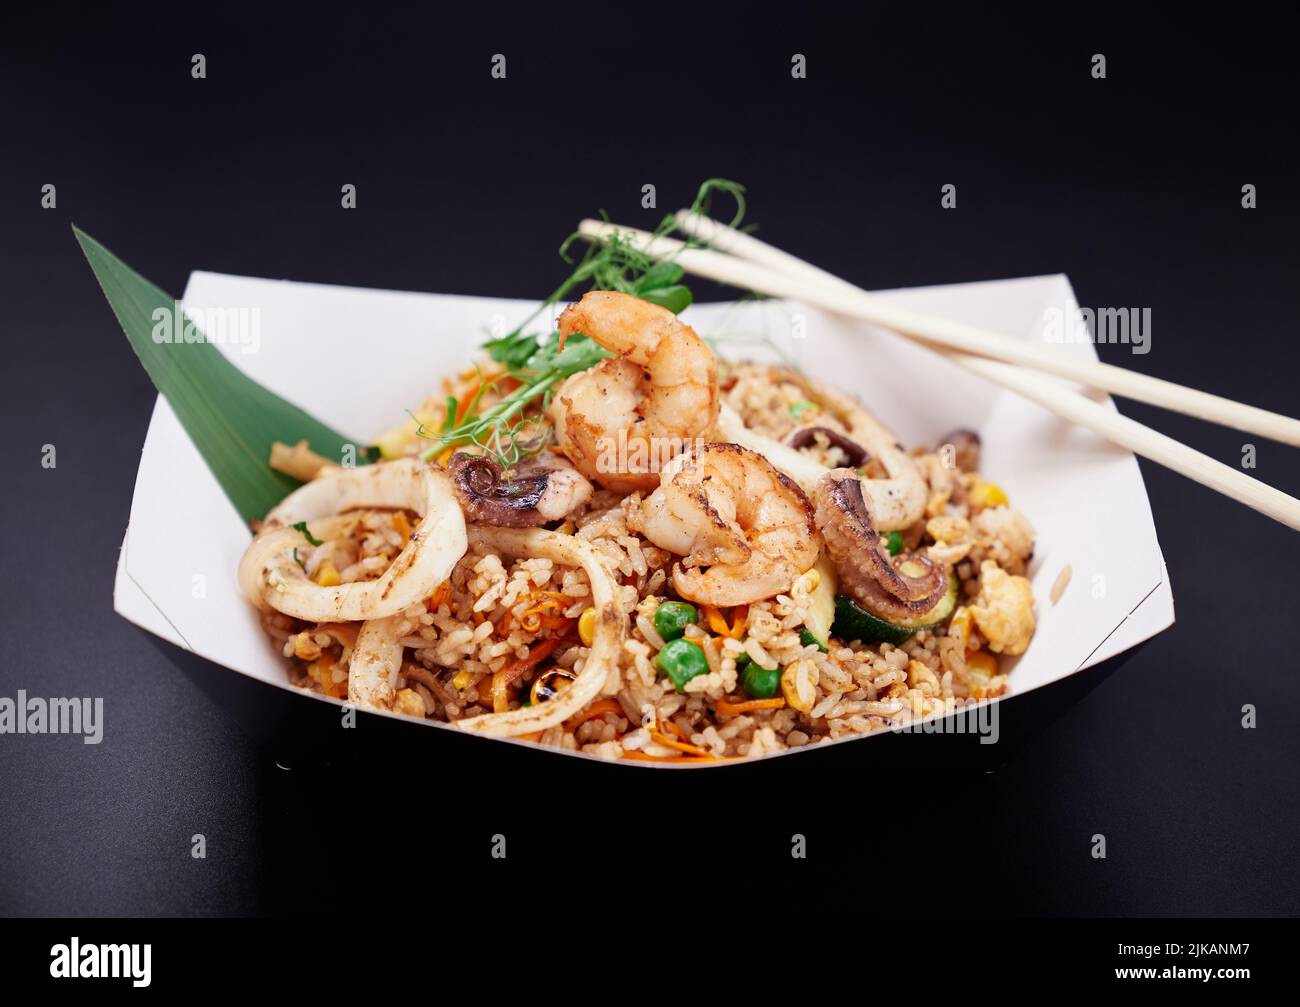 Comida rápida tailandesa saludable. Camarones, calamares y pulpos con arroz  salteado. Arroz frito con mariscos y verduras preparado en Tailandia wok  como concepto de comida vegetariana. Imagen de alta calidad Fotografía de